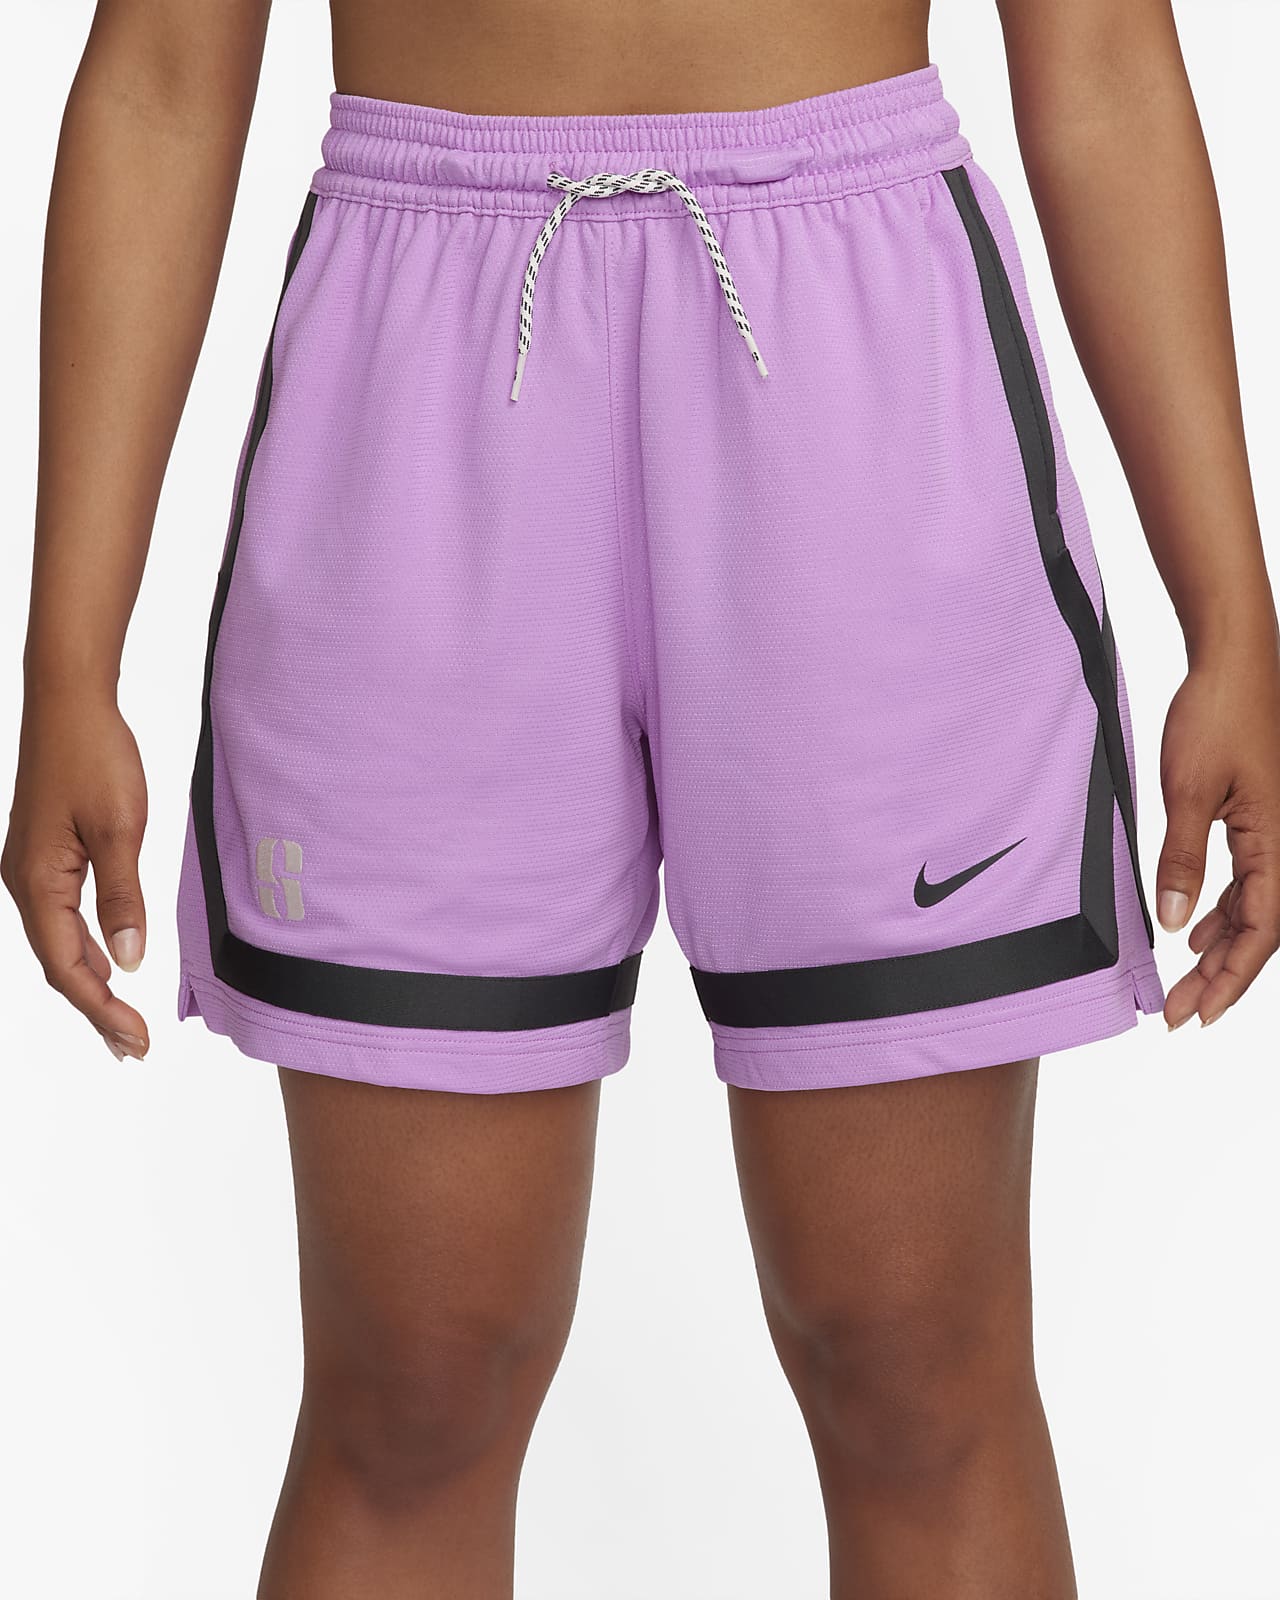 D - Lavender Mesh Basketball Short